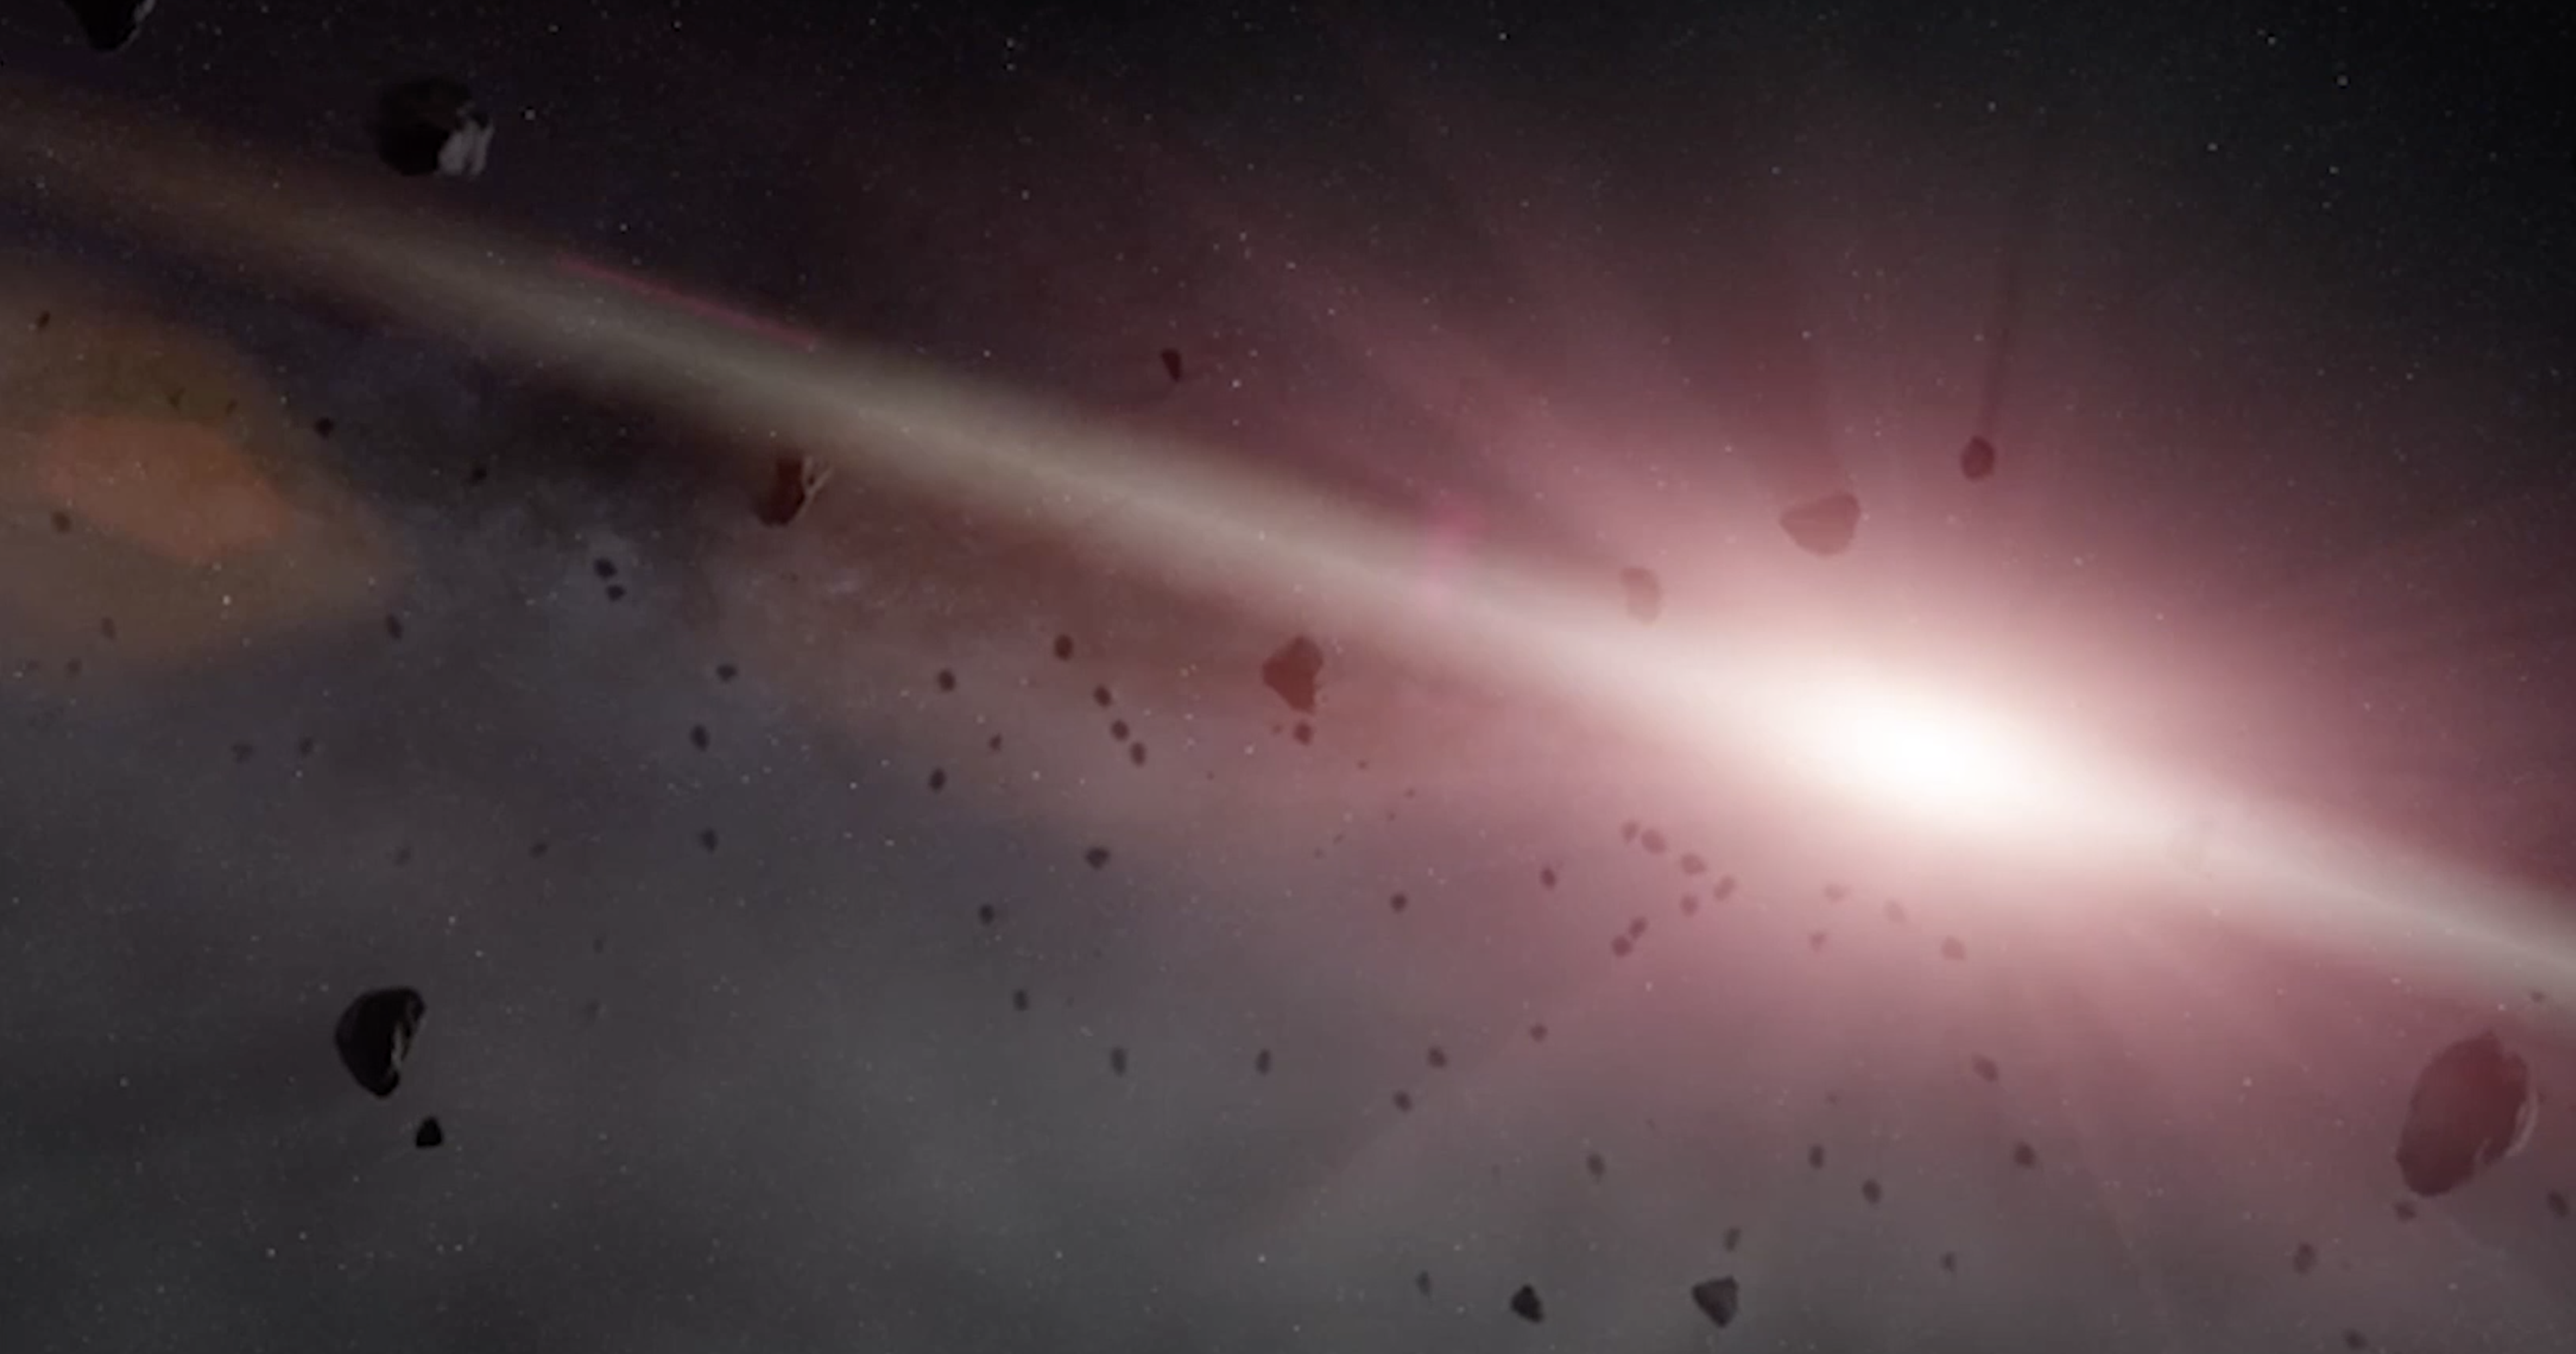 Los astrónomos han descubierto un objeto de aspecto extraño que proviene de fuera de nuestro sistema solar